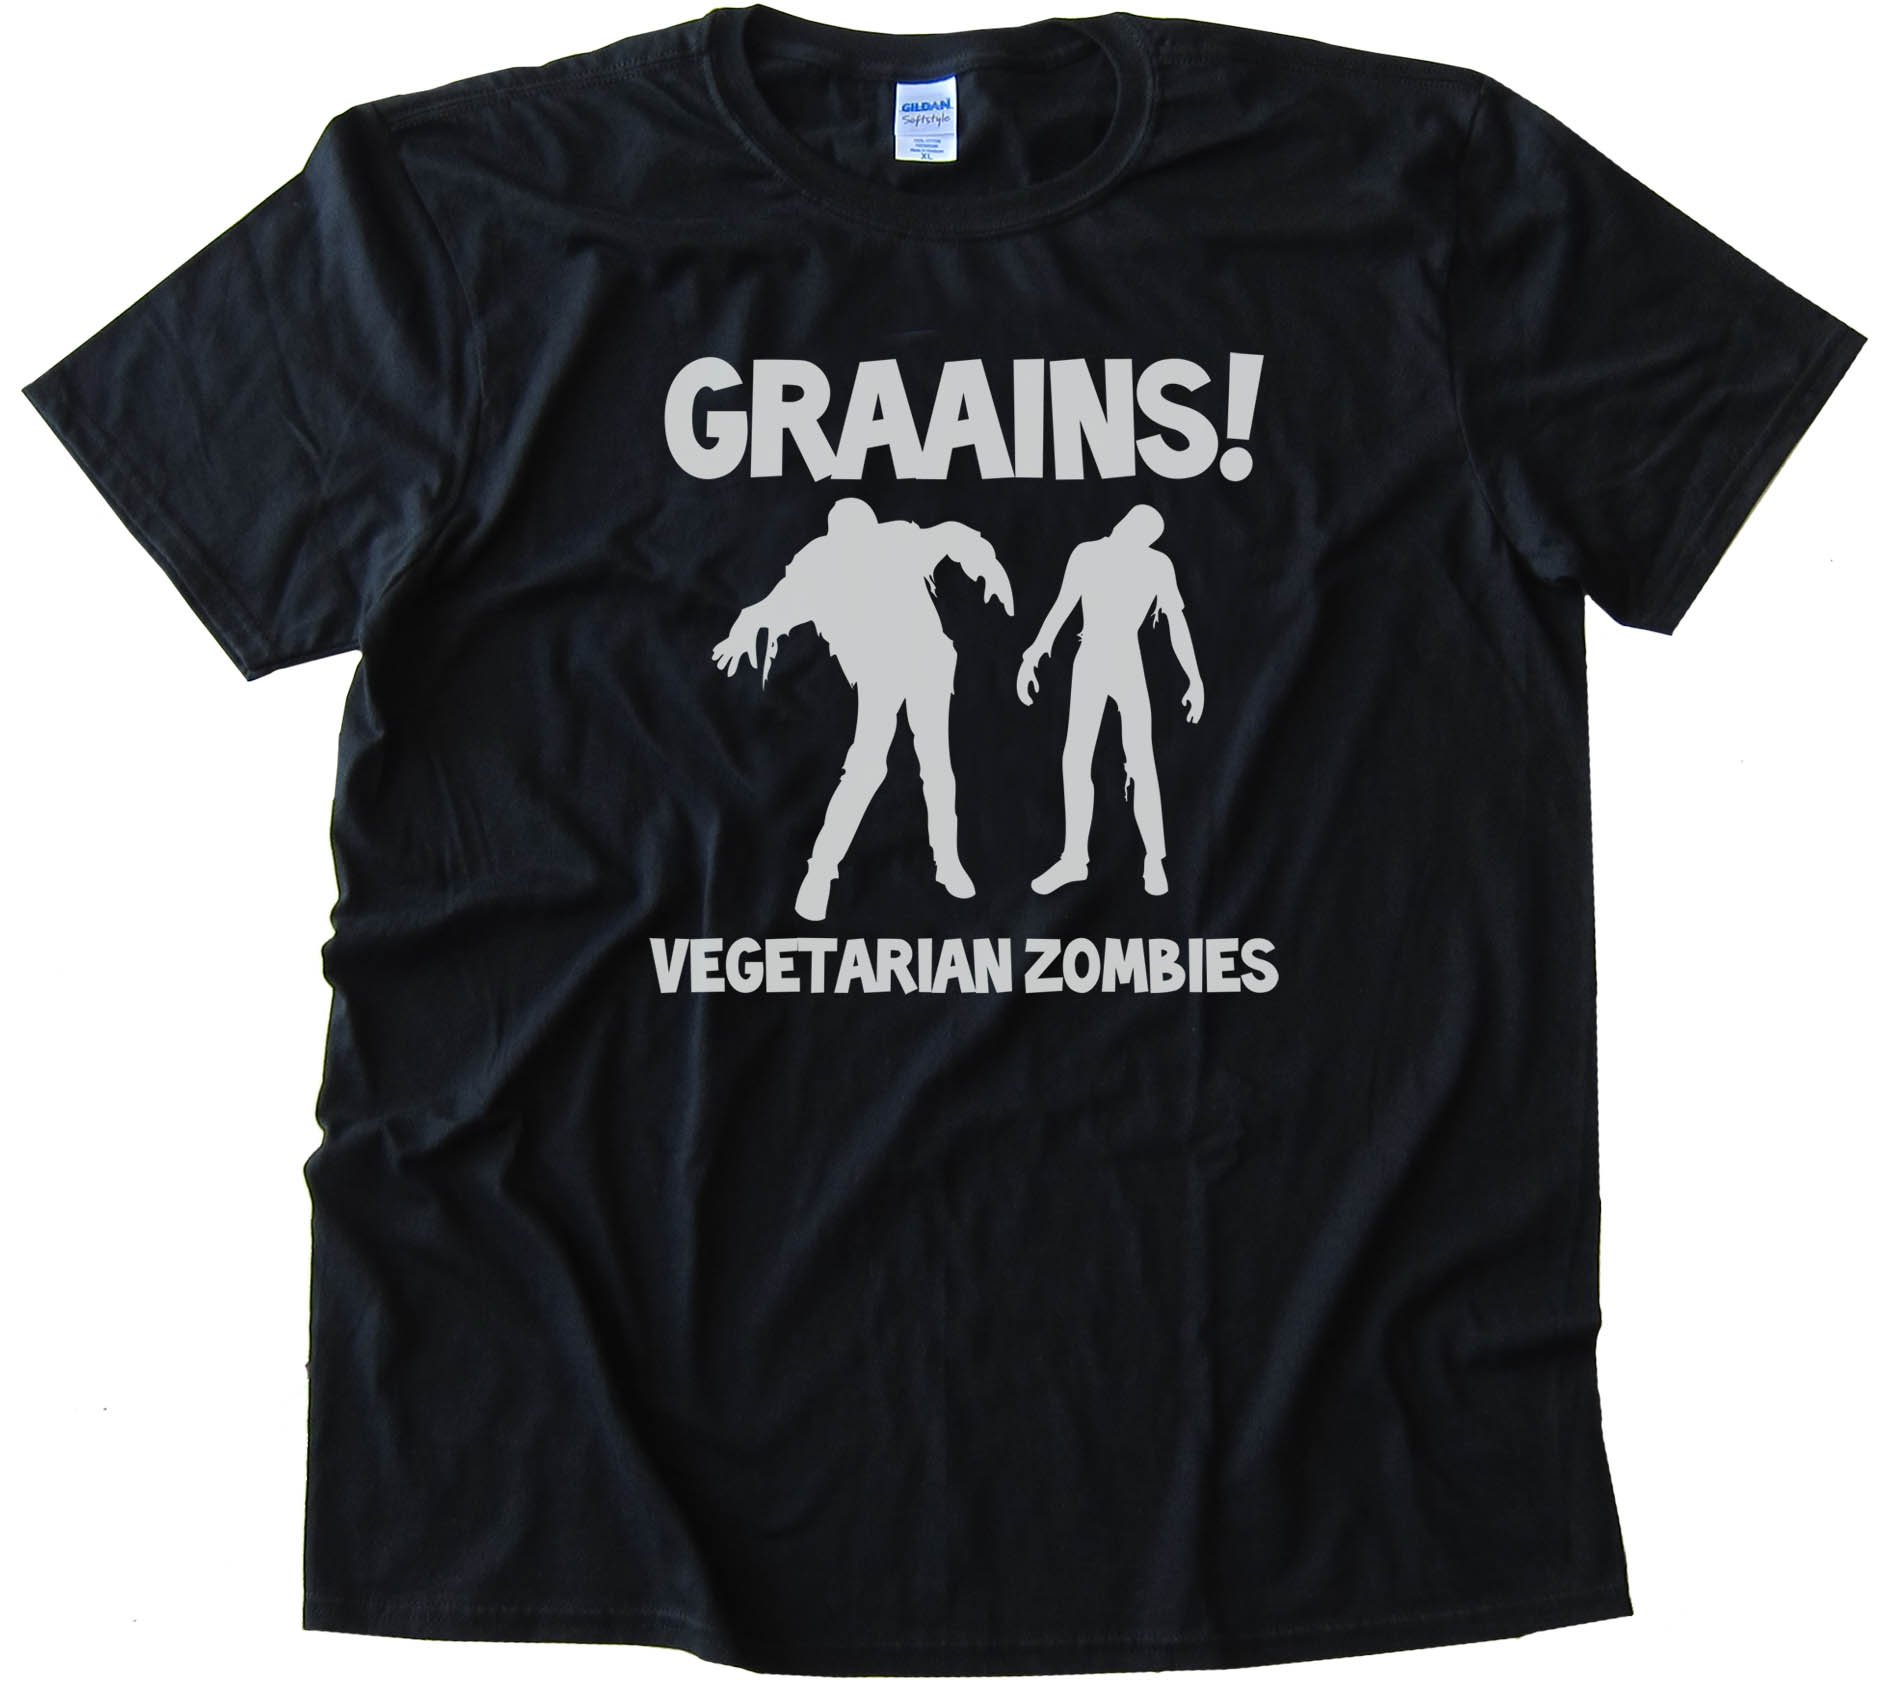 Graaaaiins! Vegetarian Zombies - Tee Shirt